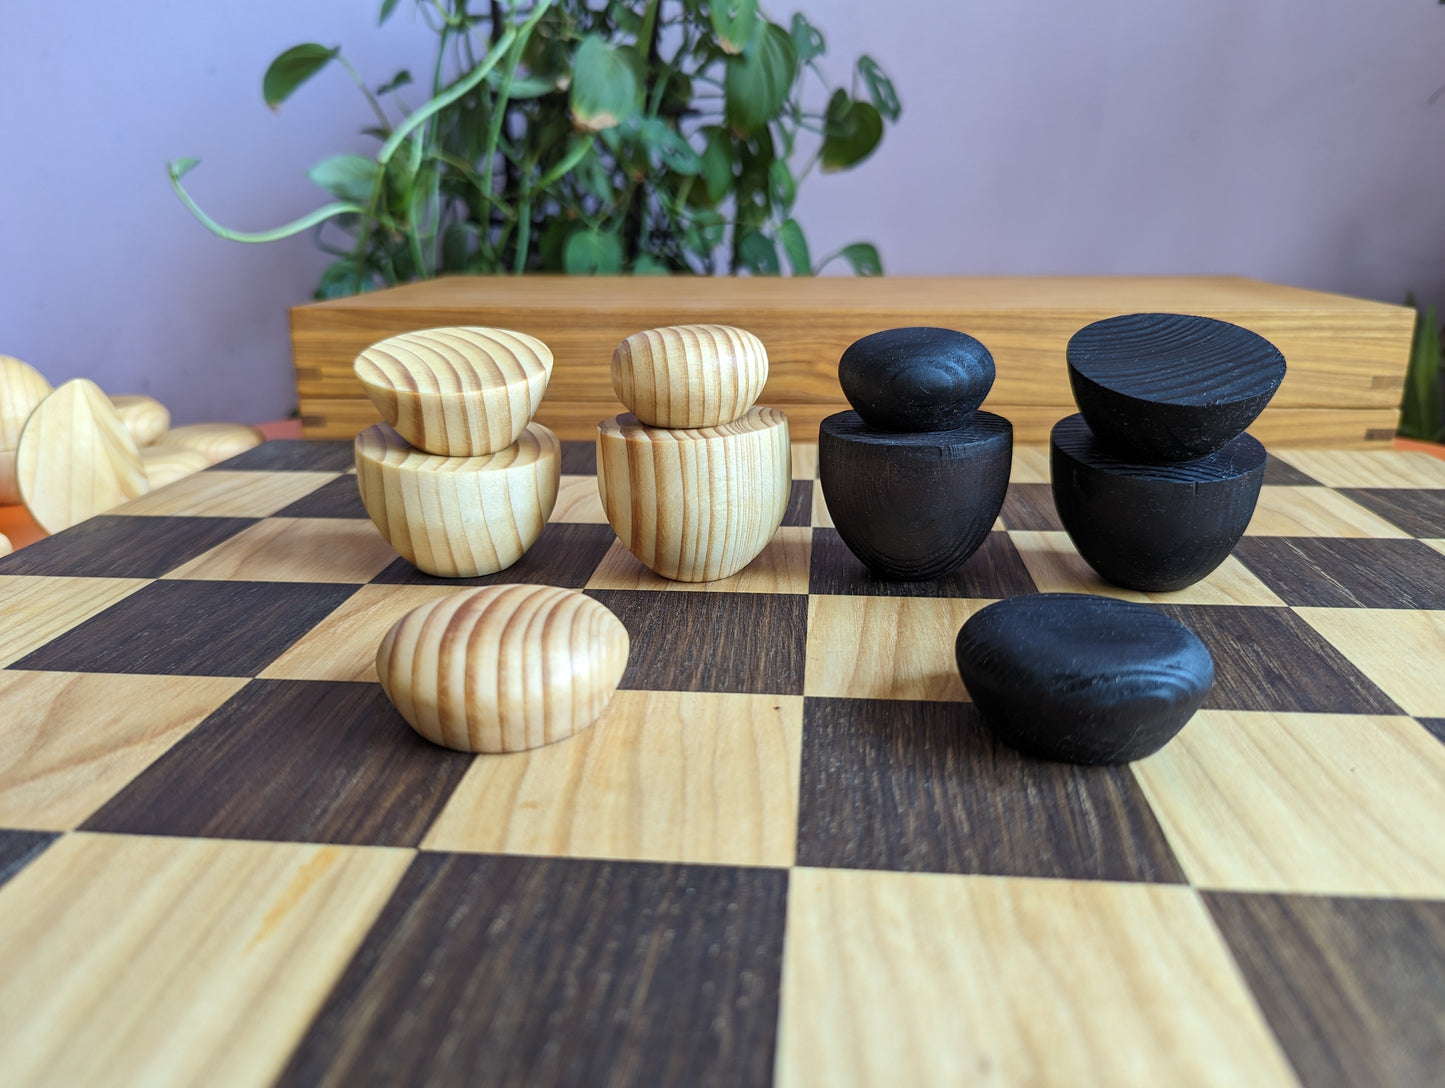 Julien Levy inspired chess set. Handmade abstract modern wooden chess.